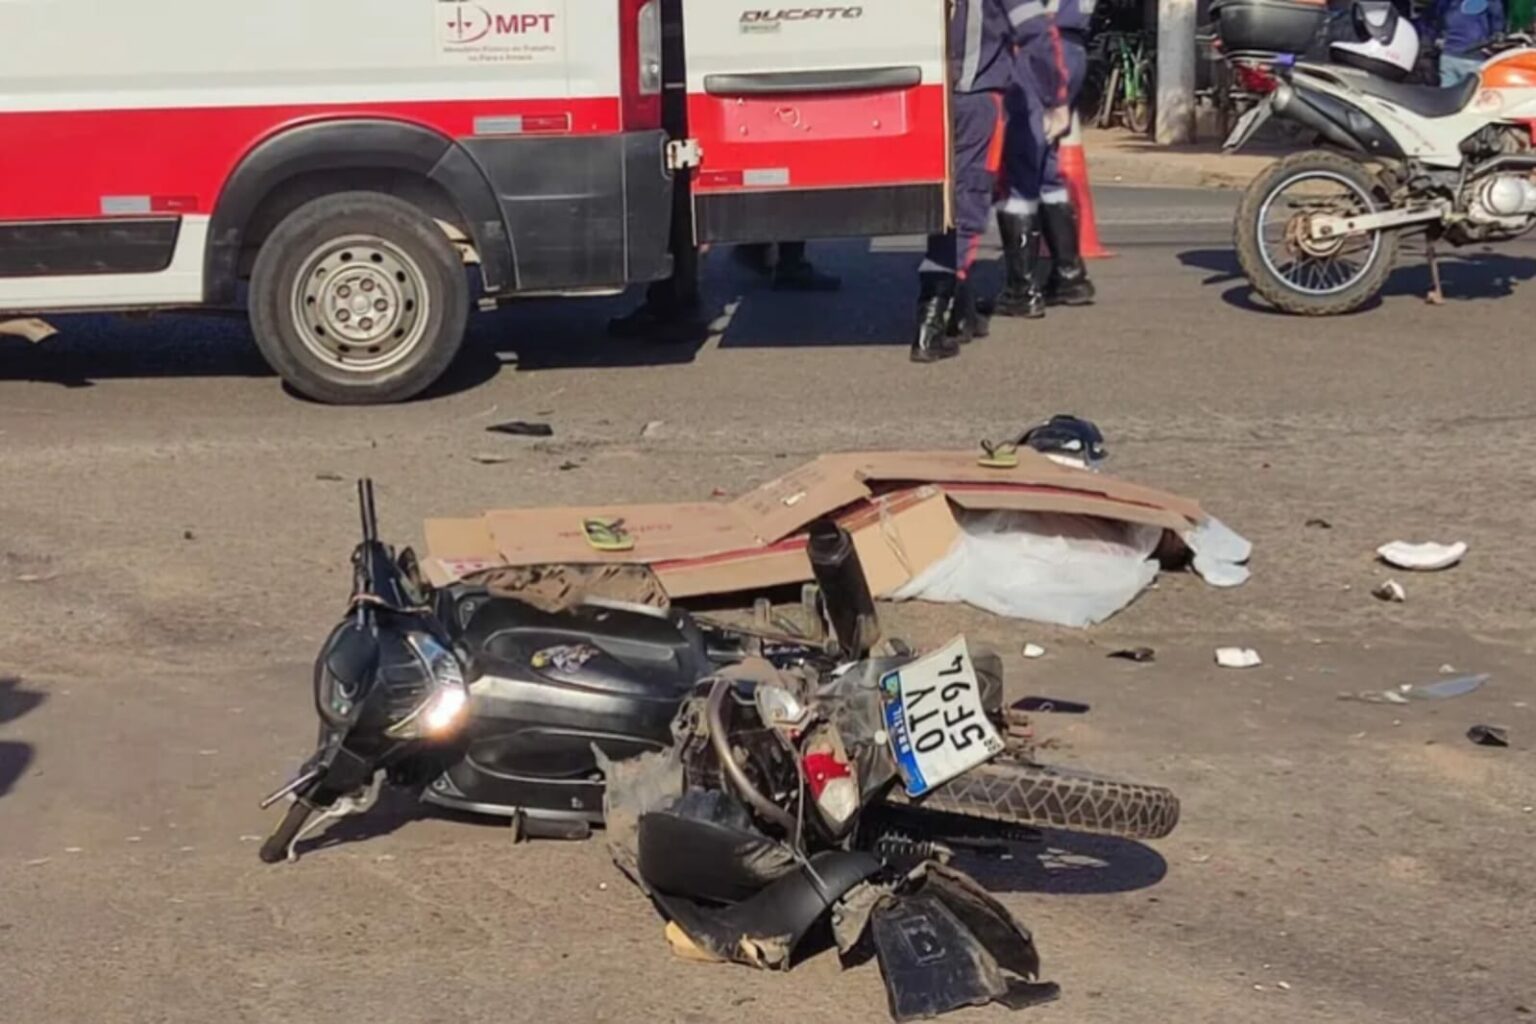 Motociclista morre após ser atingido por carreta no oeste do Pará